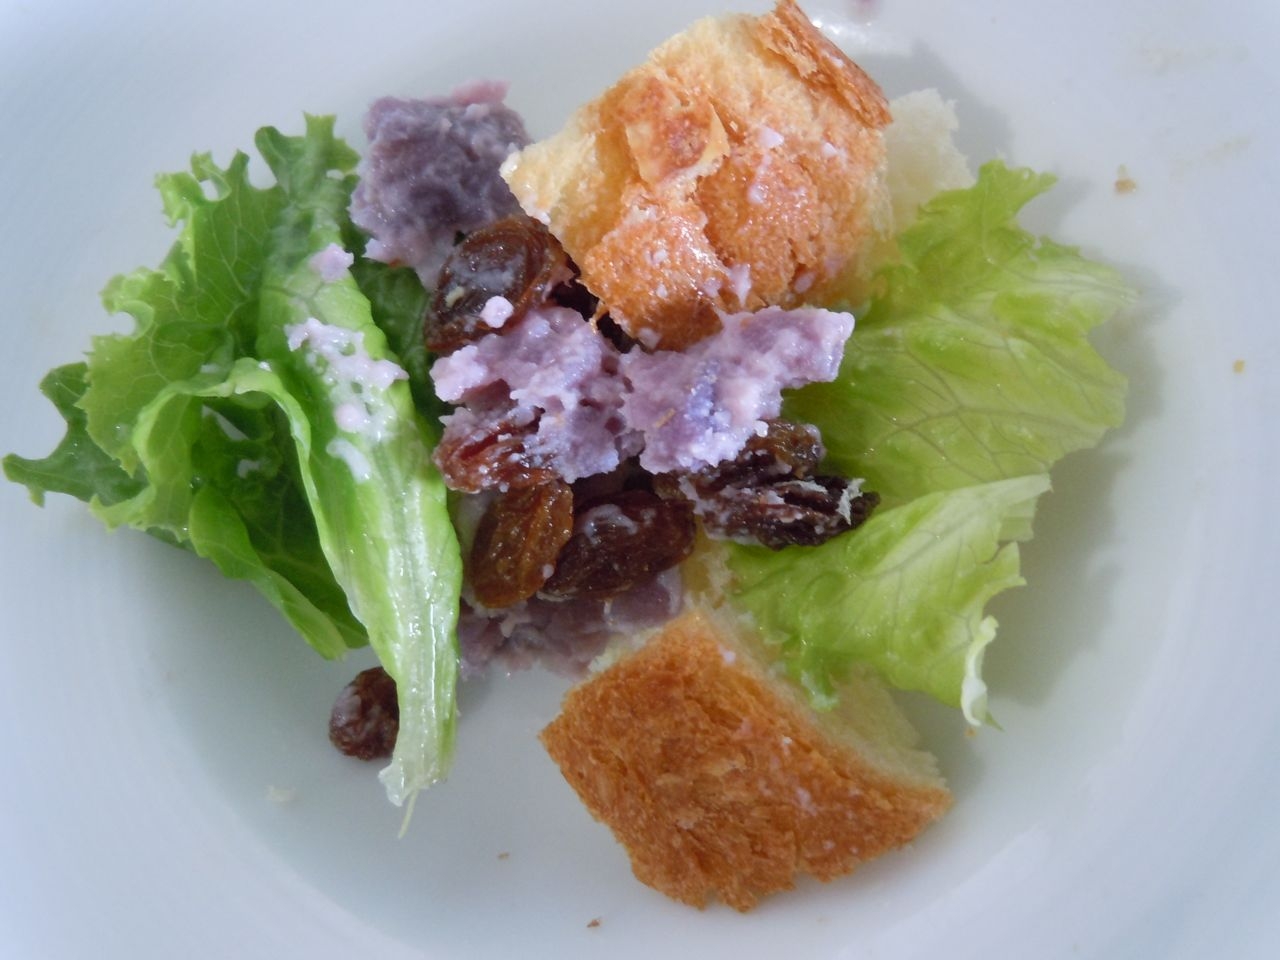 紫芋とレタスとパンのレーズンサラダ